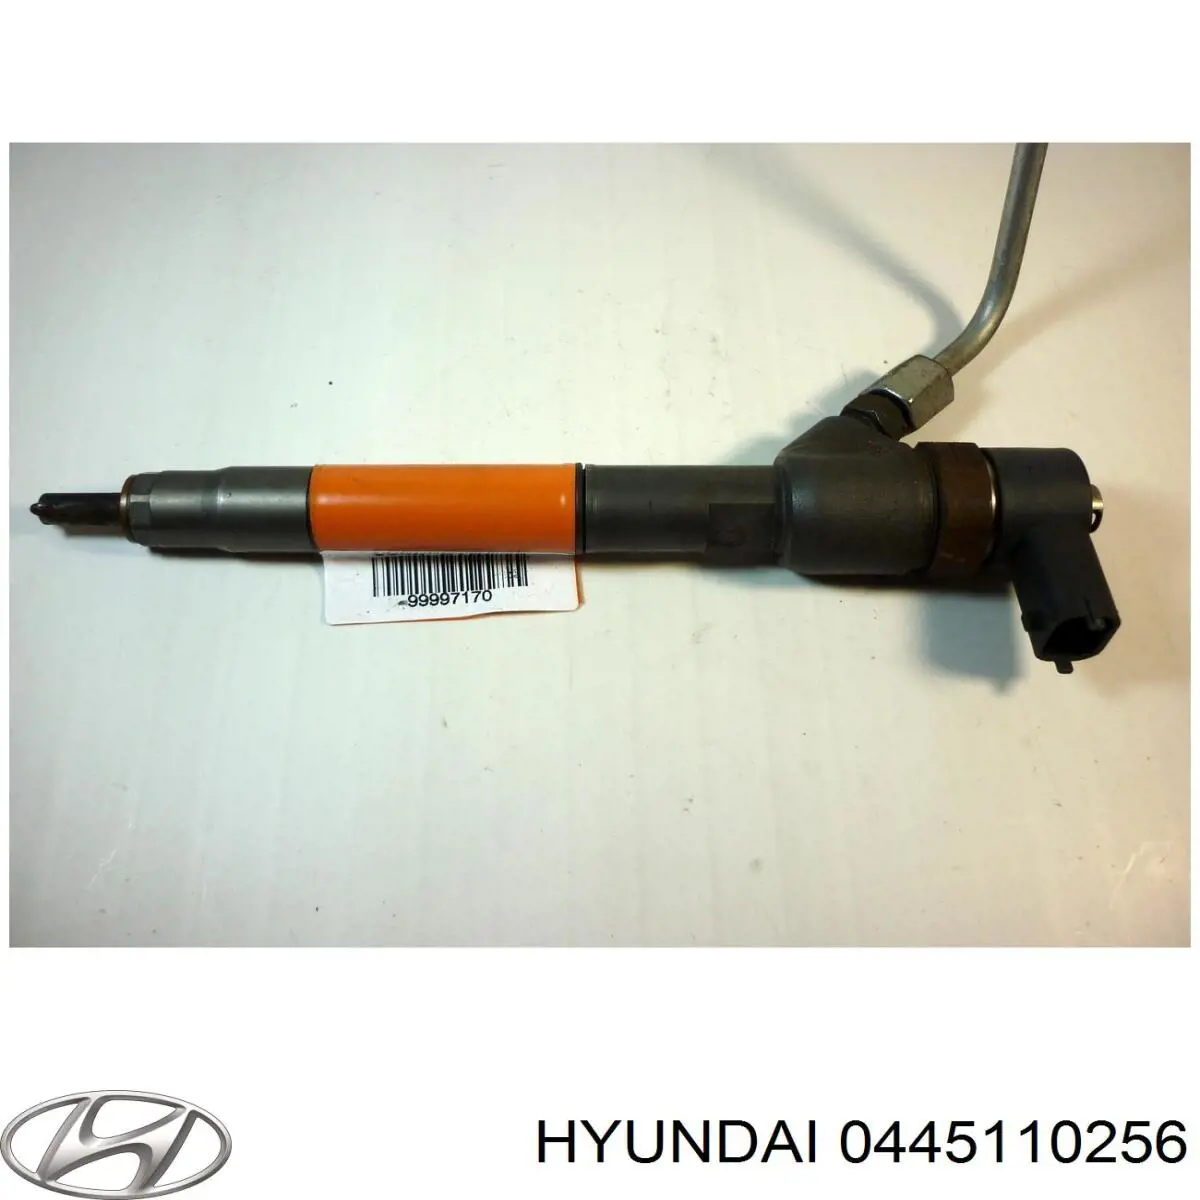 0445110256 Hyundai/Kia inyector